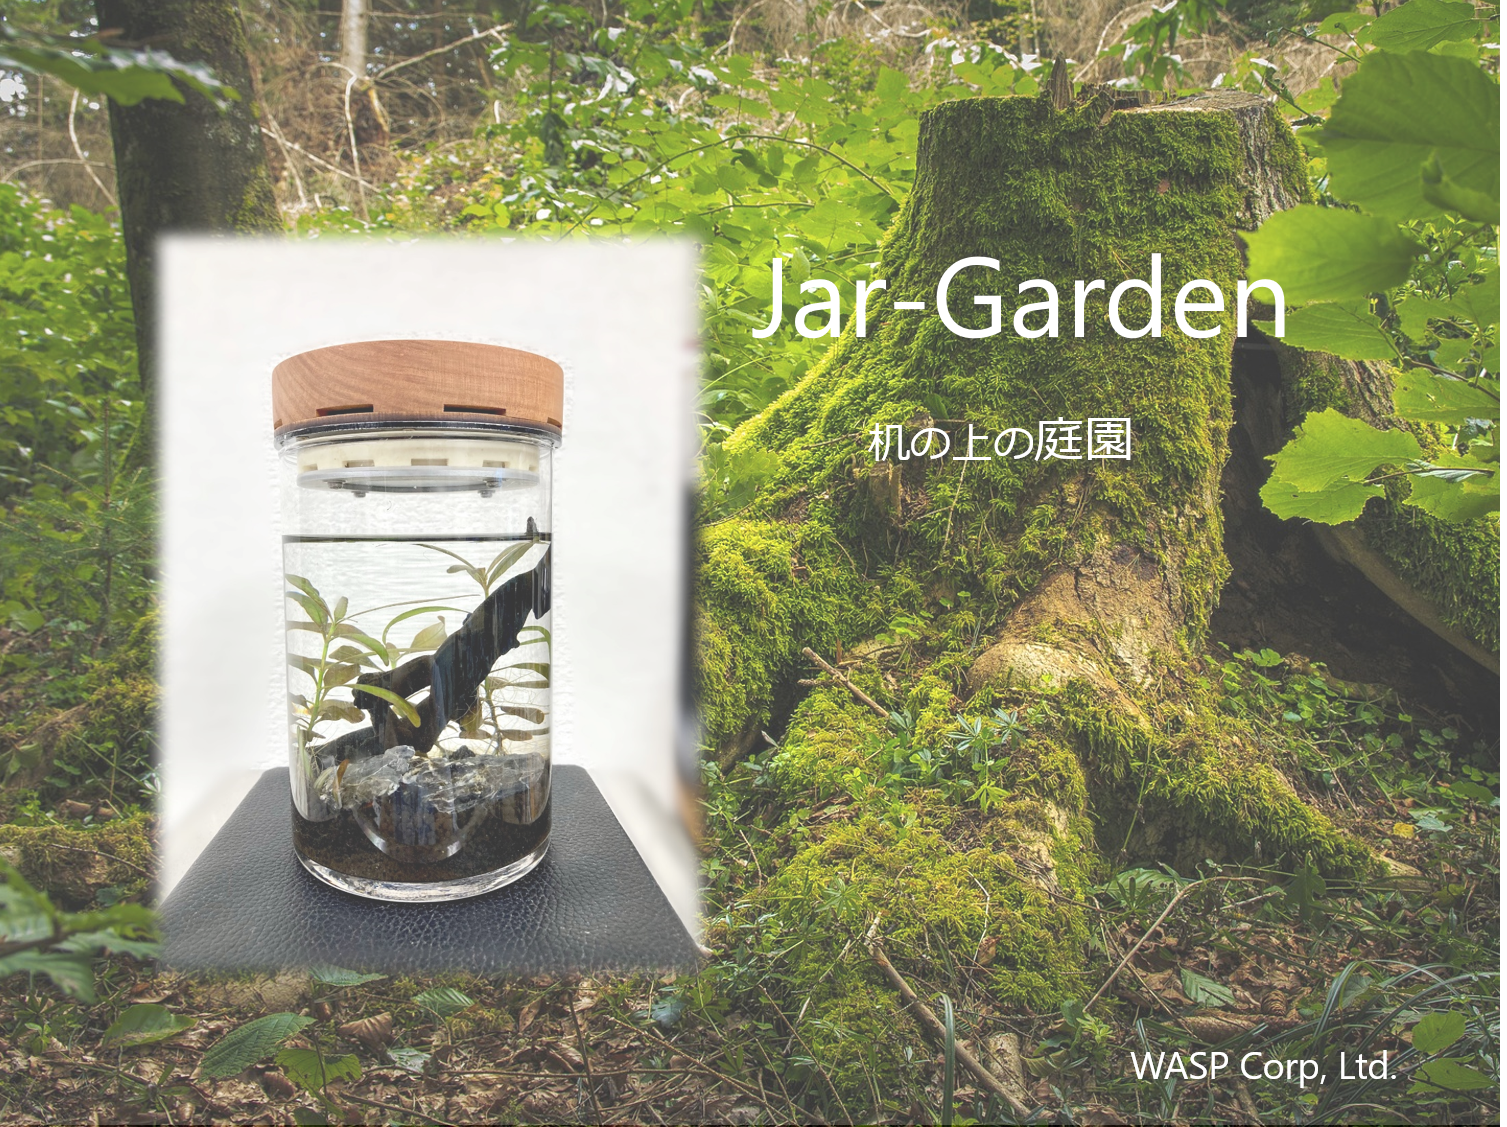 屋内でも植物を楽しめるインテリアグッズJar-Gardenのイメージ画像